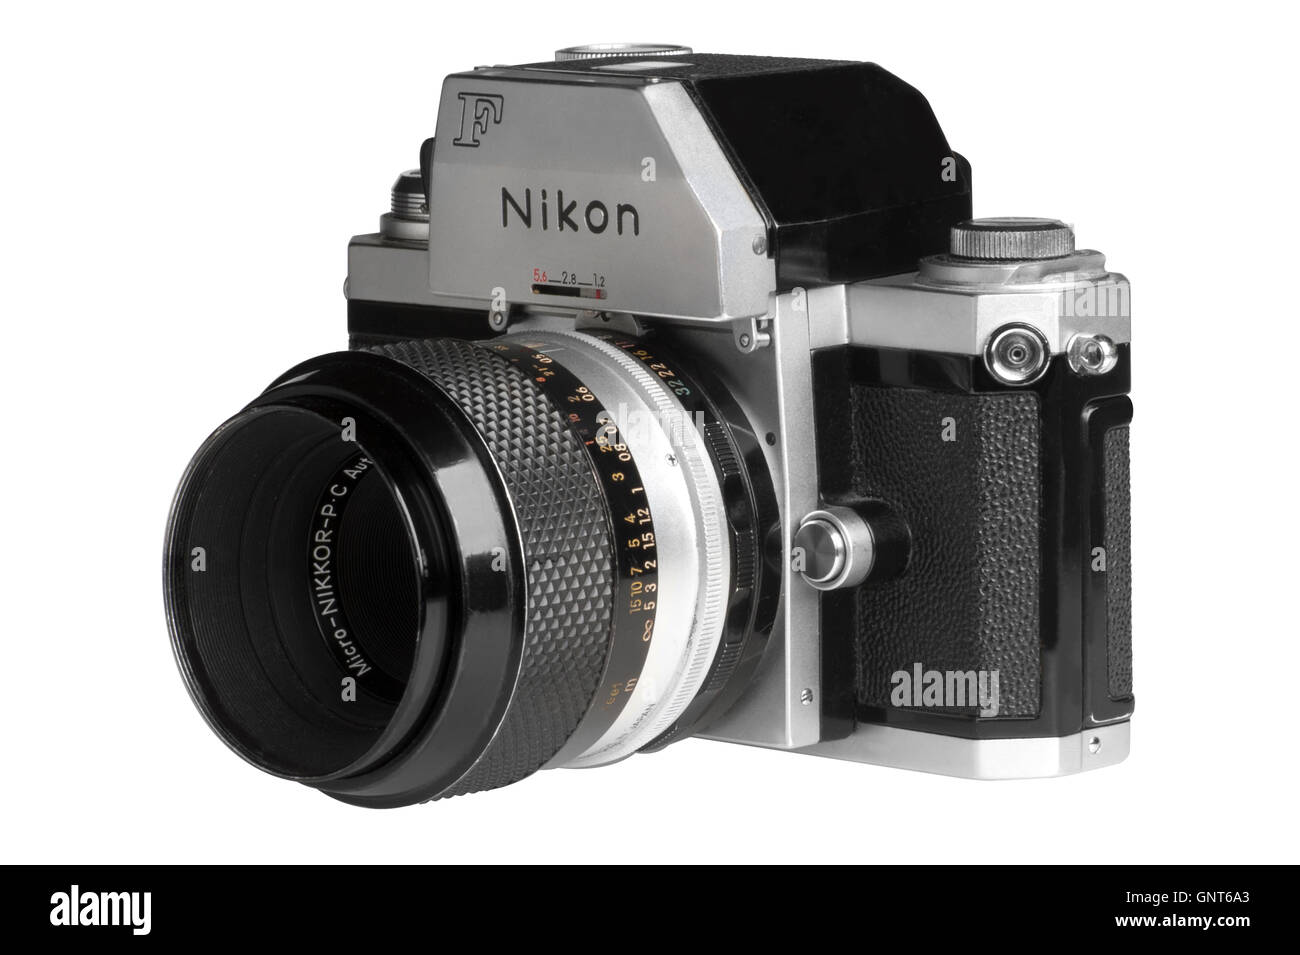 1971 Nikon F con Photomic FTn testa di dosaggio, 55mm Micro-Nikkor attaccato. Rivolto verso sinistra Foto Stock